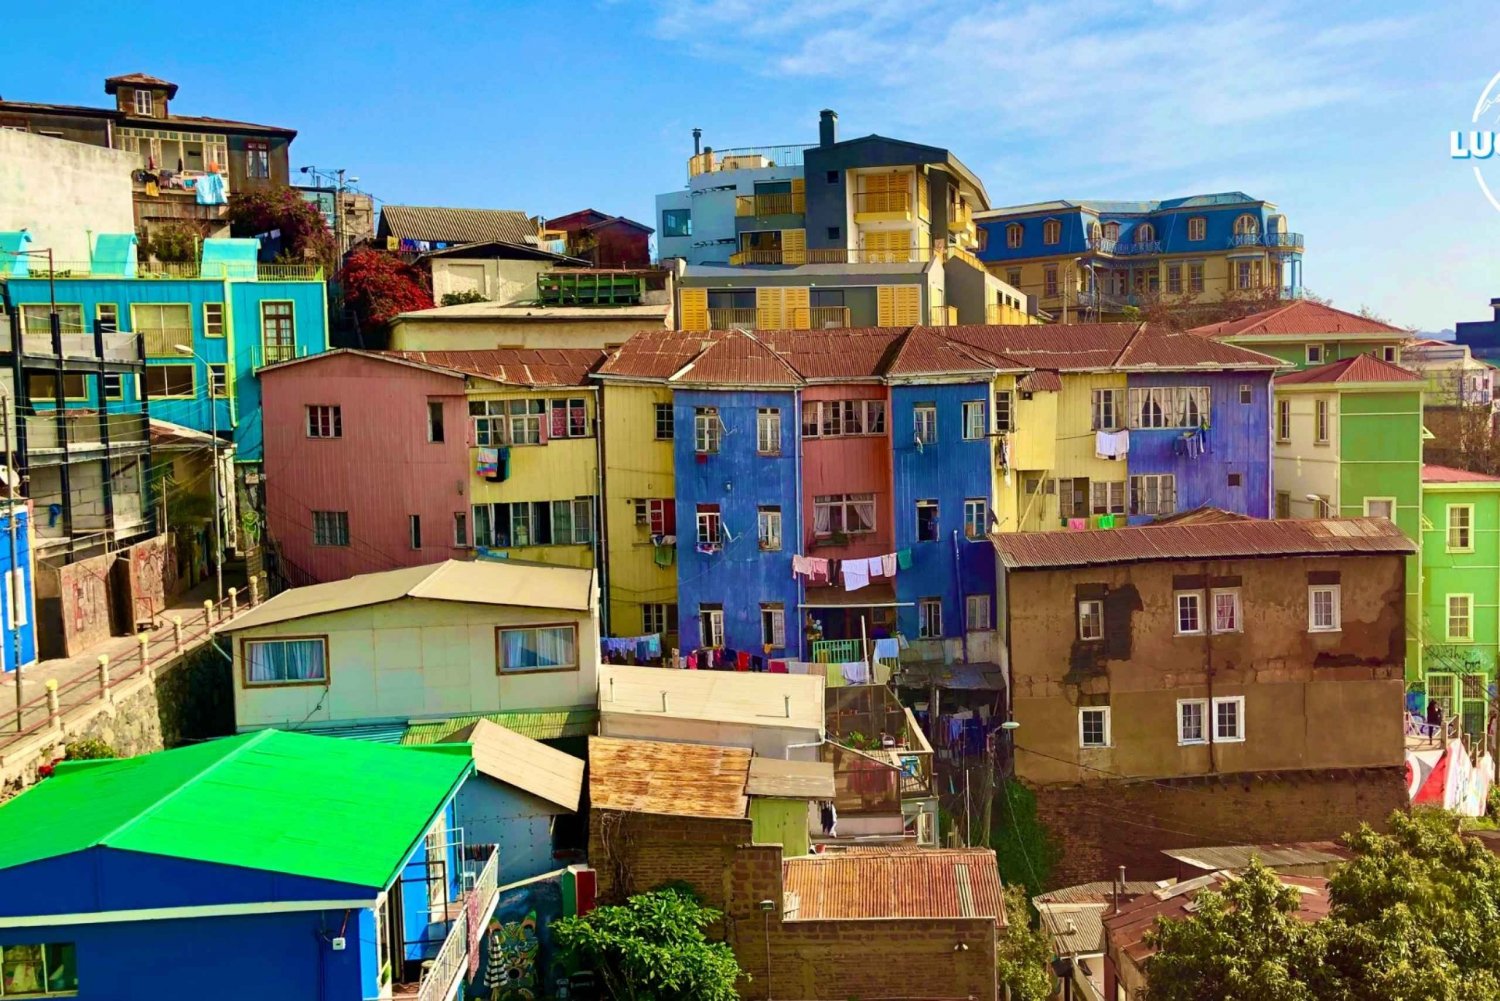 Tour Valparaíso + Viña del mar